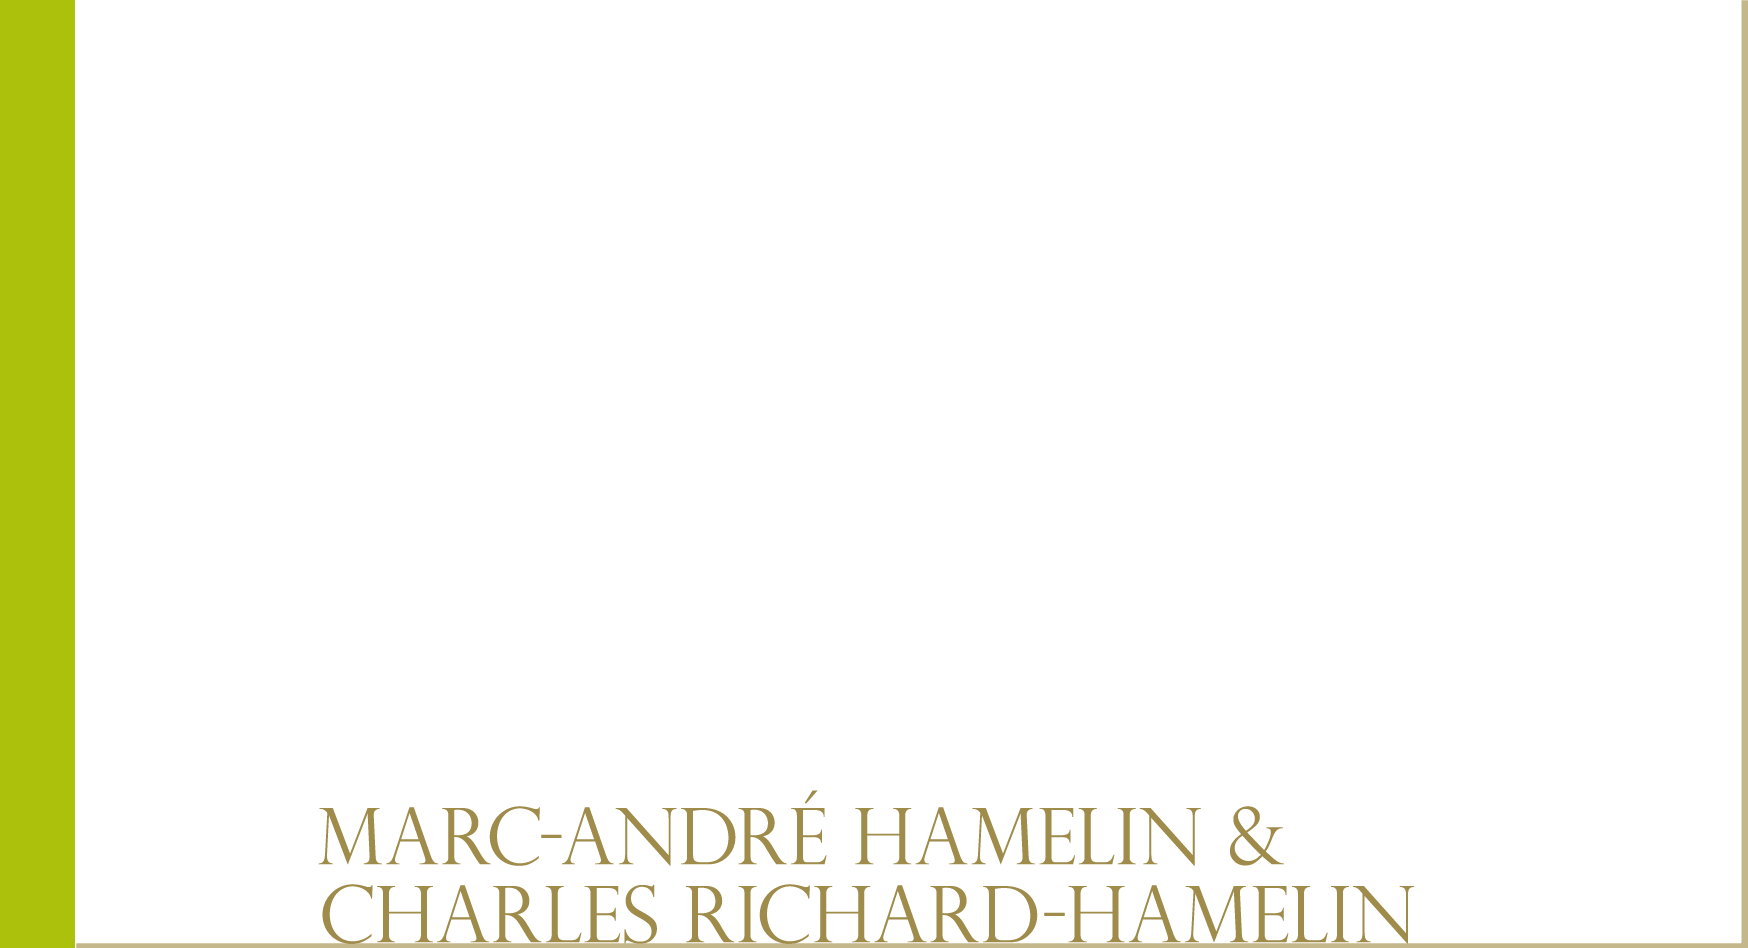 Vol.1 Marc-André Hamelin & Charles Richard-Hamelin